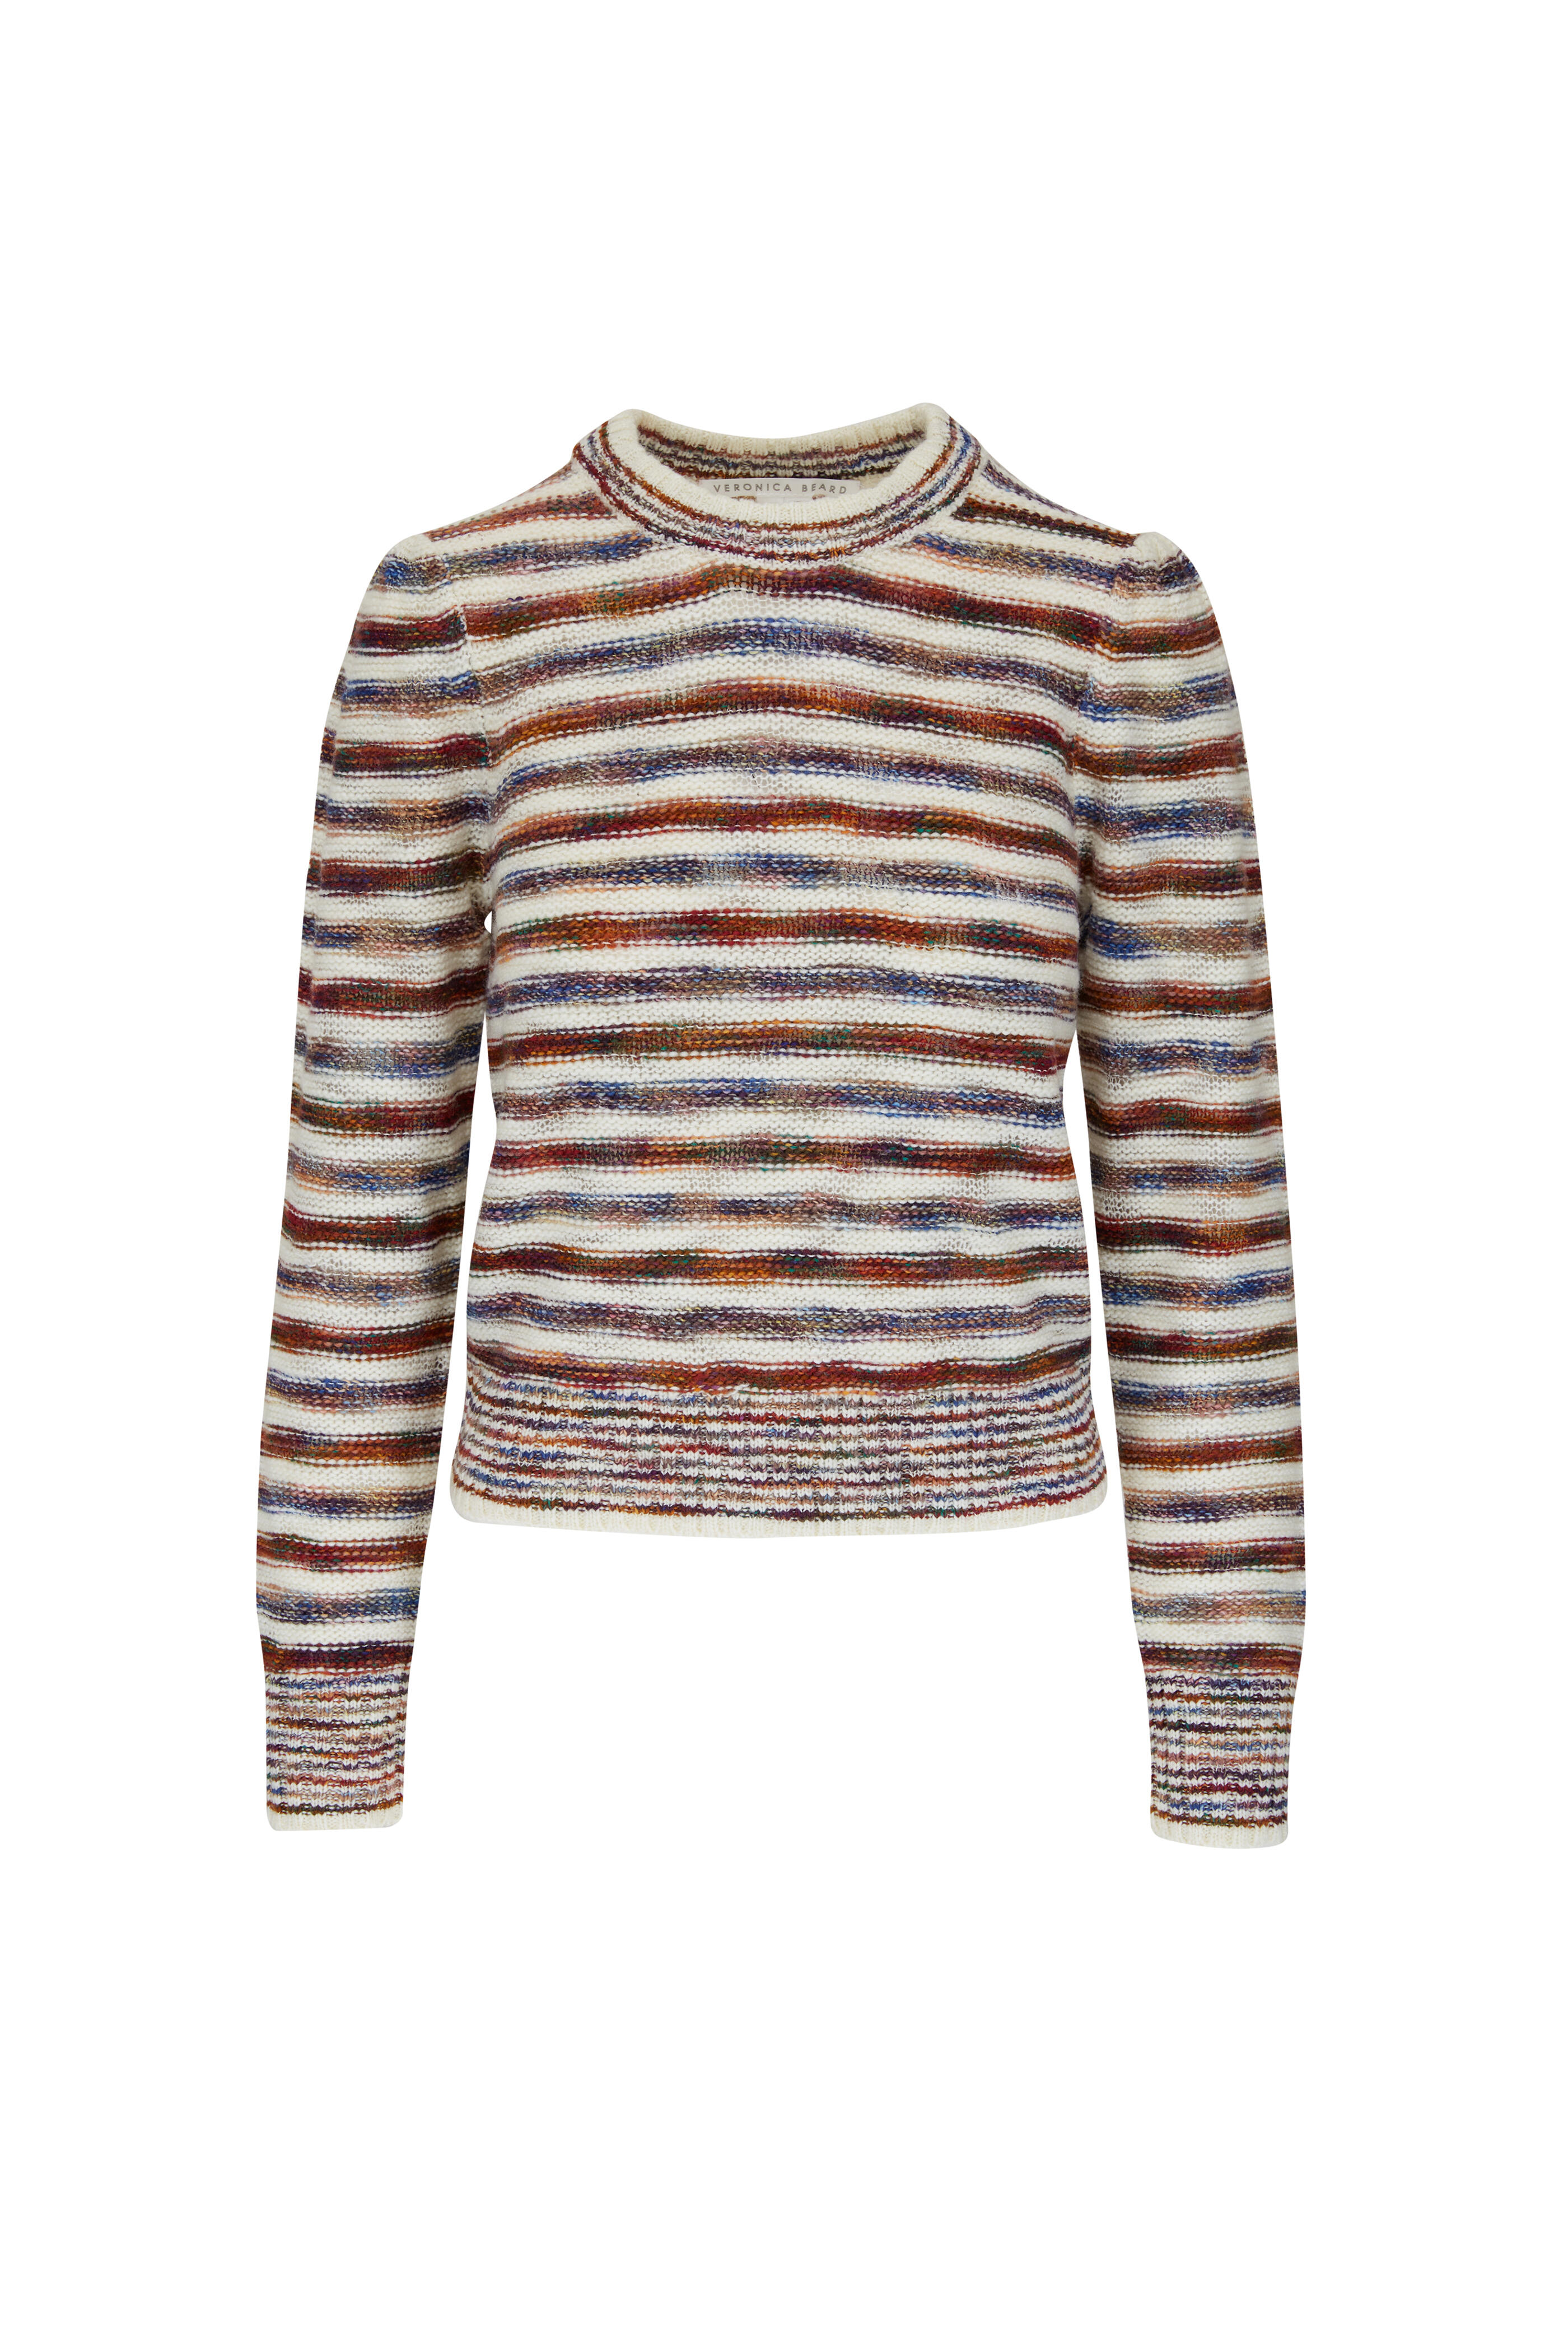 Veronica Beard - Raissa Multi Stripe Crewneck Sweater